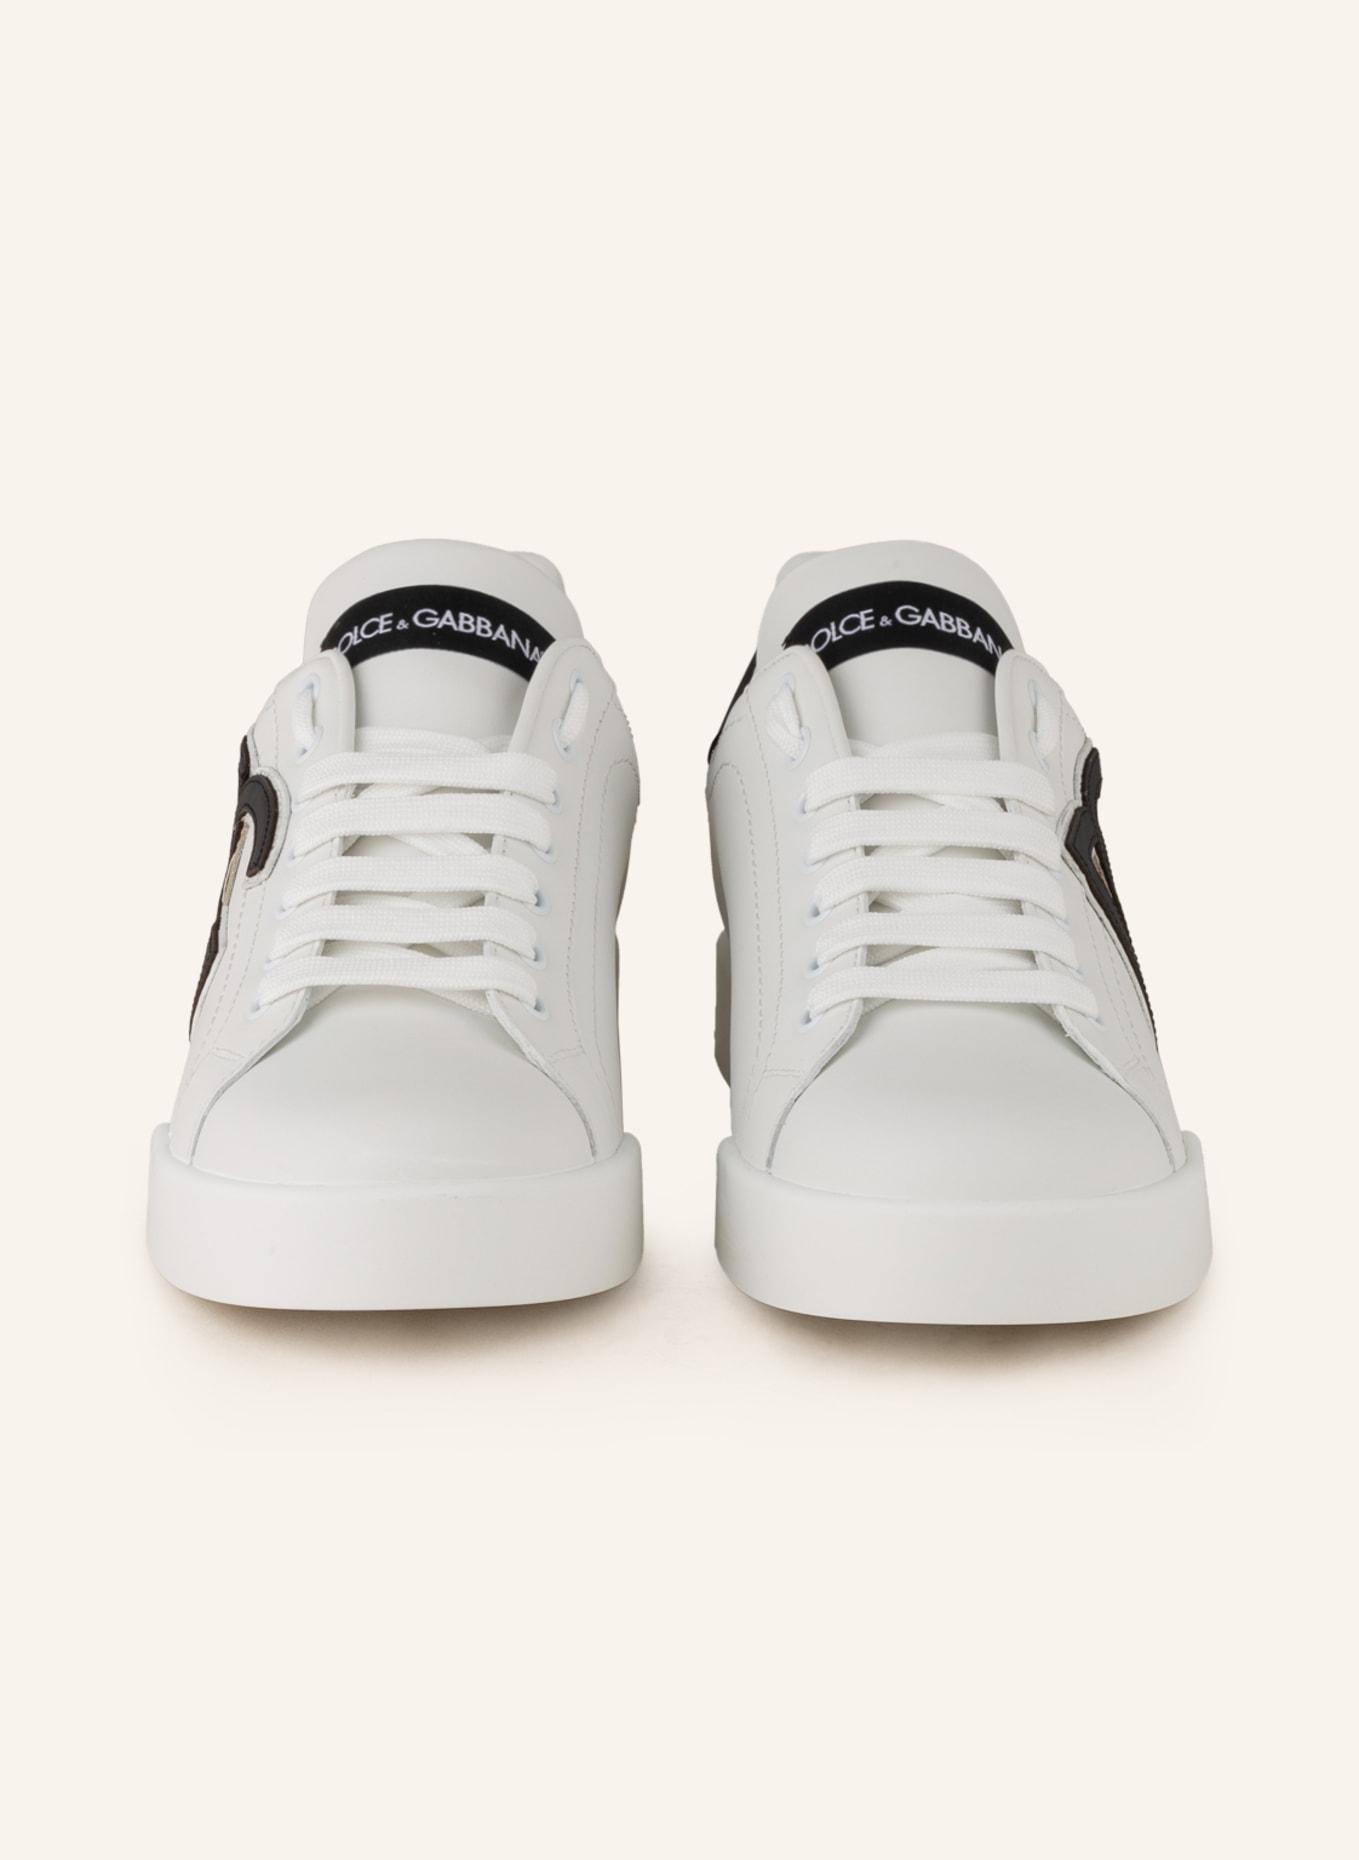 DOLCE & GABBANA Sneakers PORTOFINO, Color: WHITE/ BLACK (Image 3)